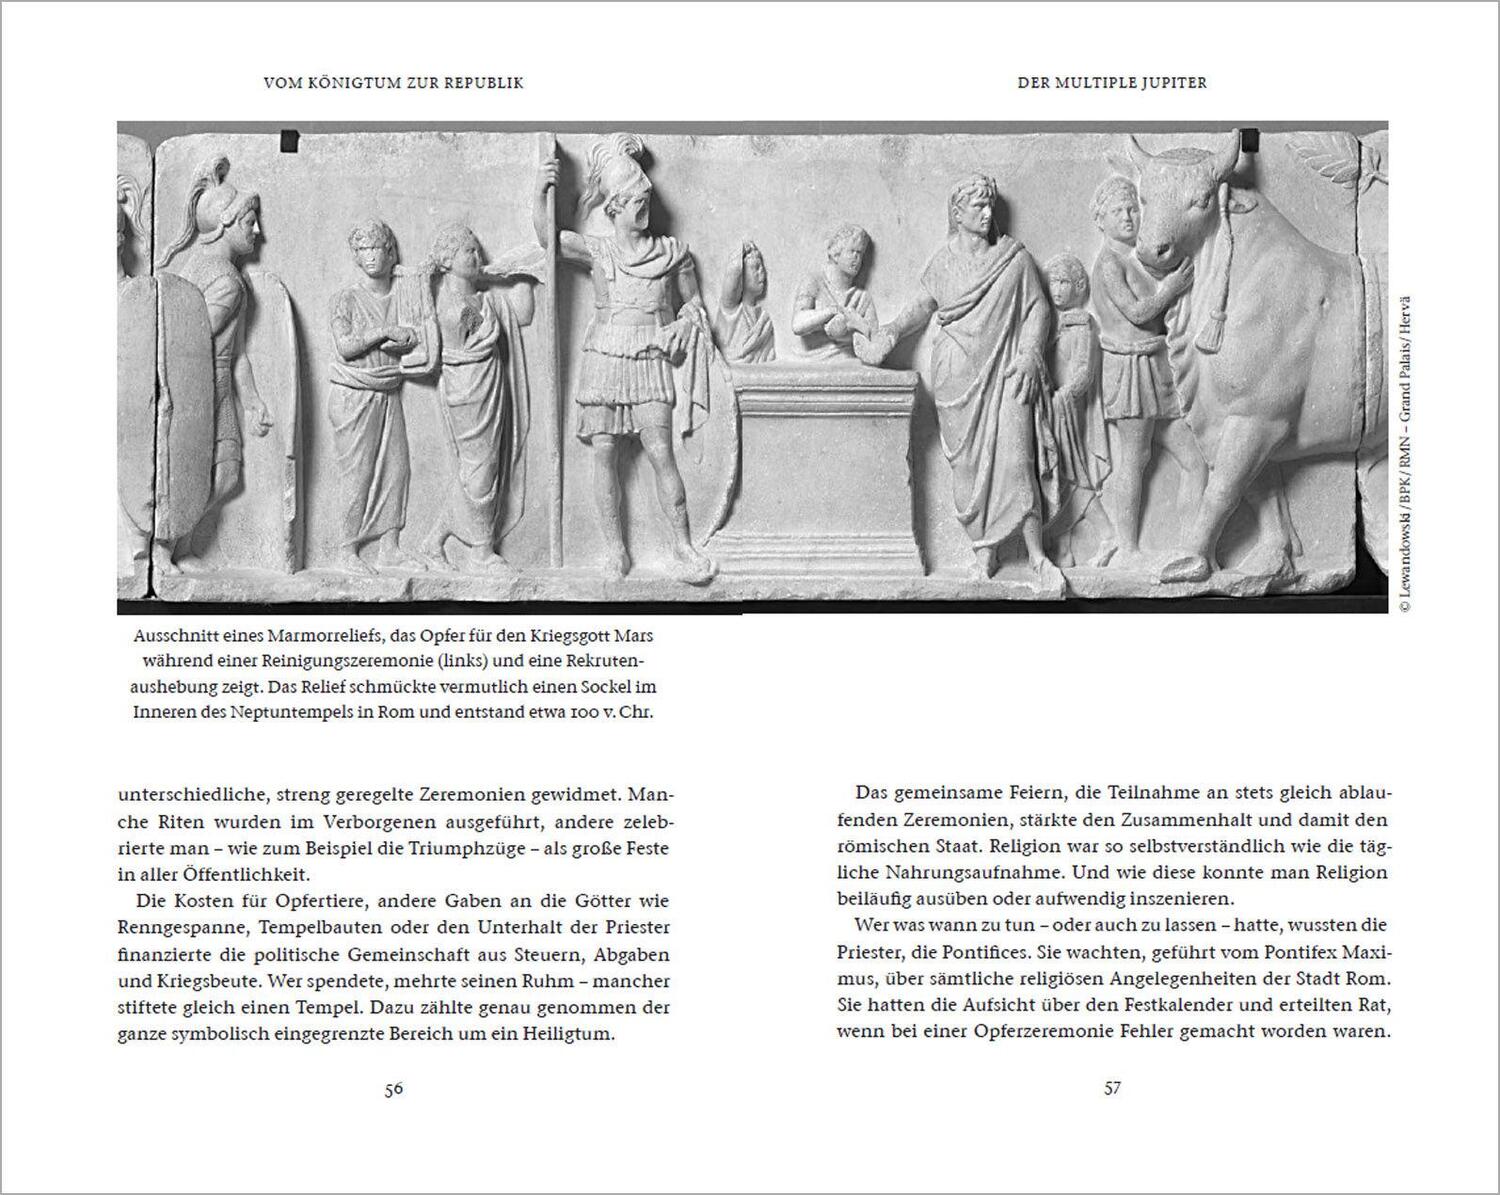 Bild: 9783809443148 | Rom: Aufstieg einer antiken Weltmacht | Dietmar Pieper (u. a.) | Buch